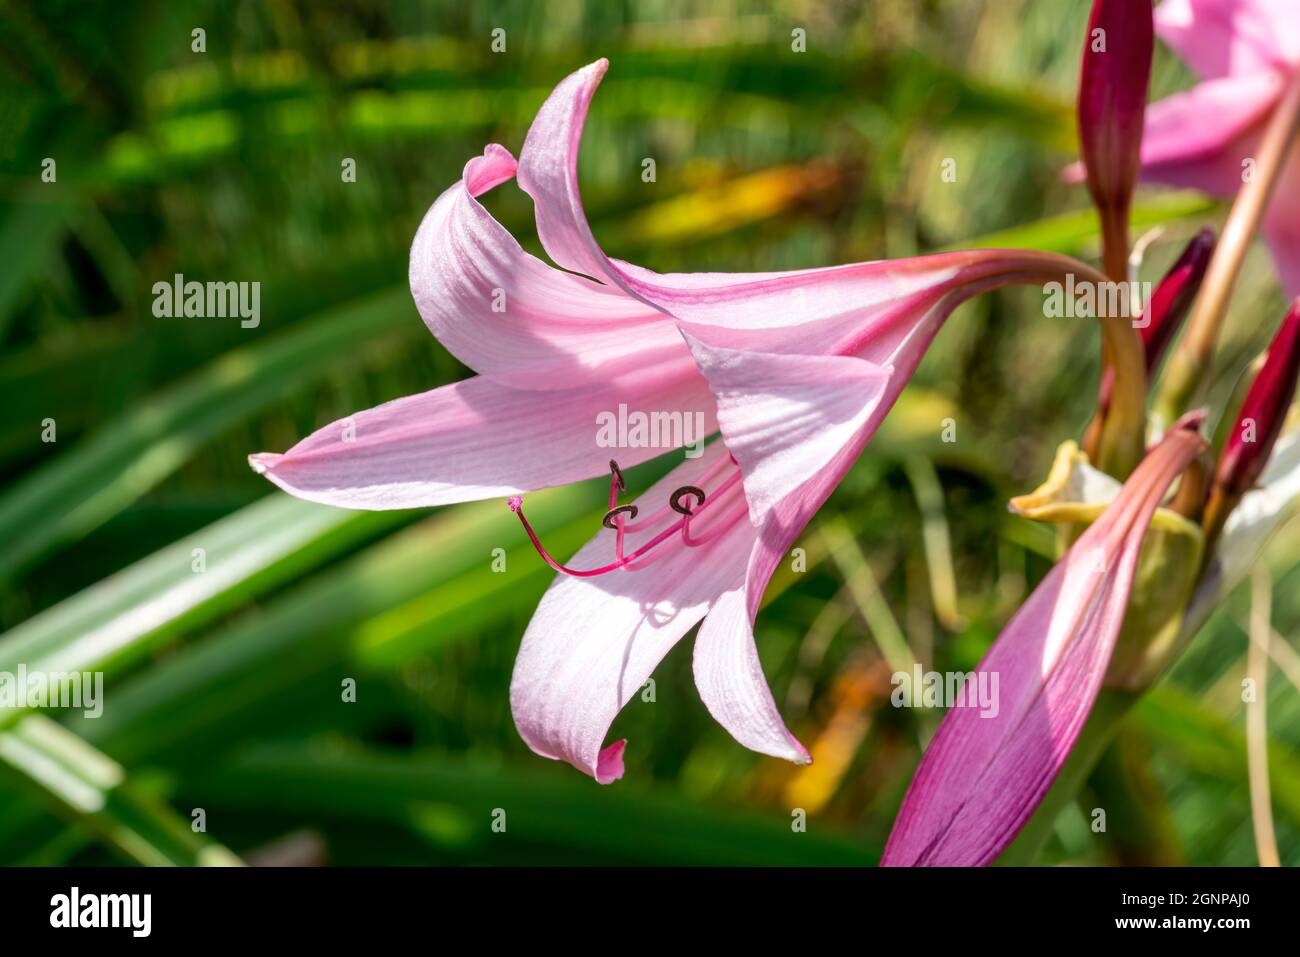 Crinum x Powellii un autunno estate autunno che fioriscono pianta bulbosa con una tromba rosa come il fiore estivo comunemente noto come giglio palude, foto di scorta im Foto Stock